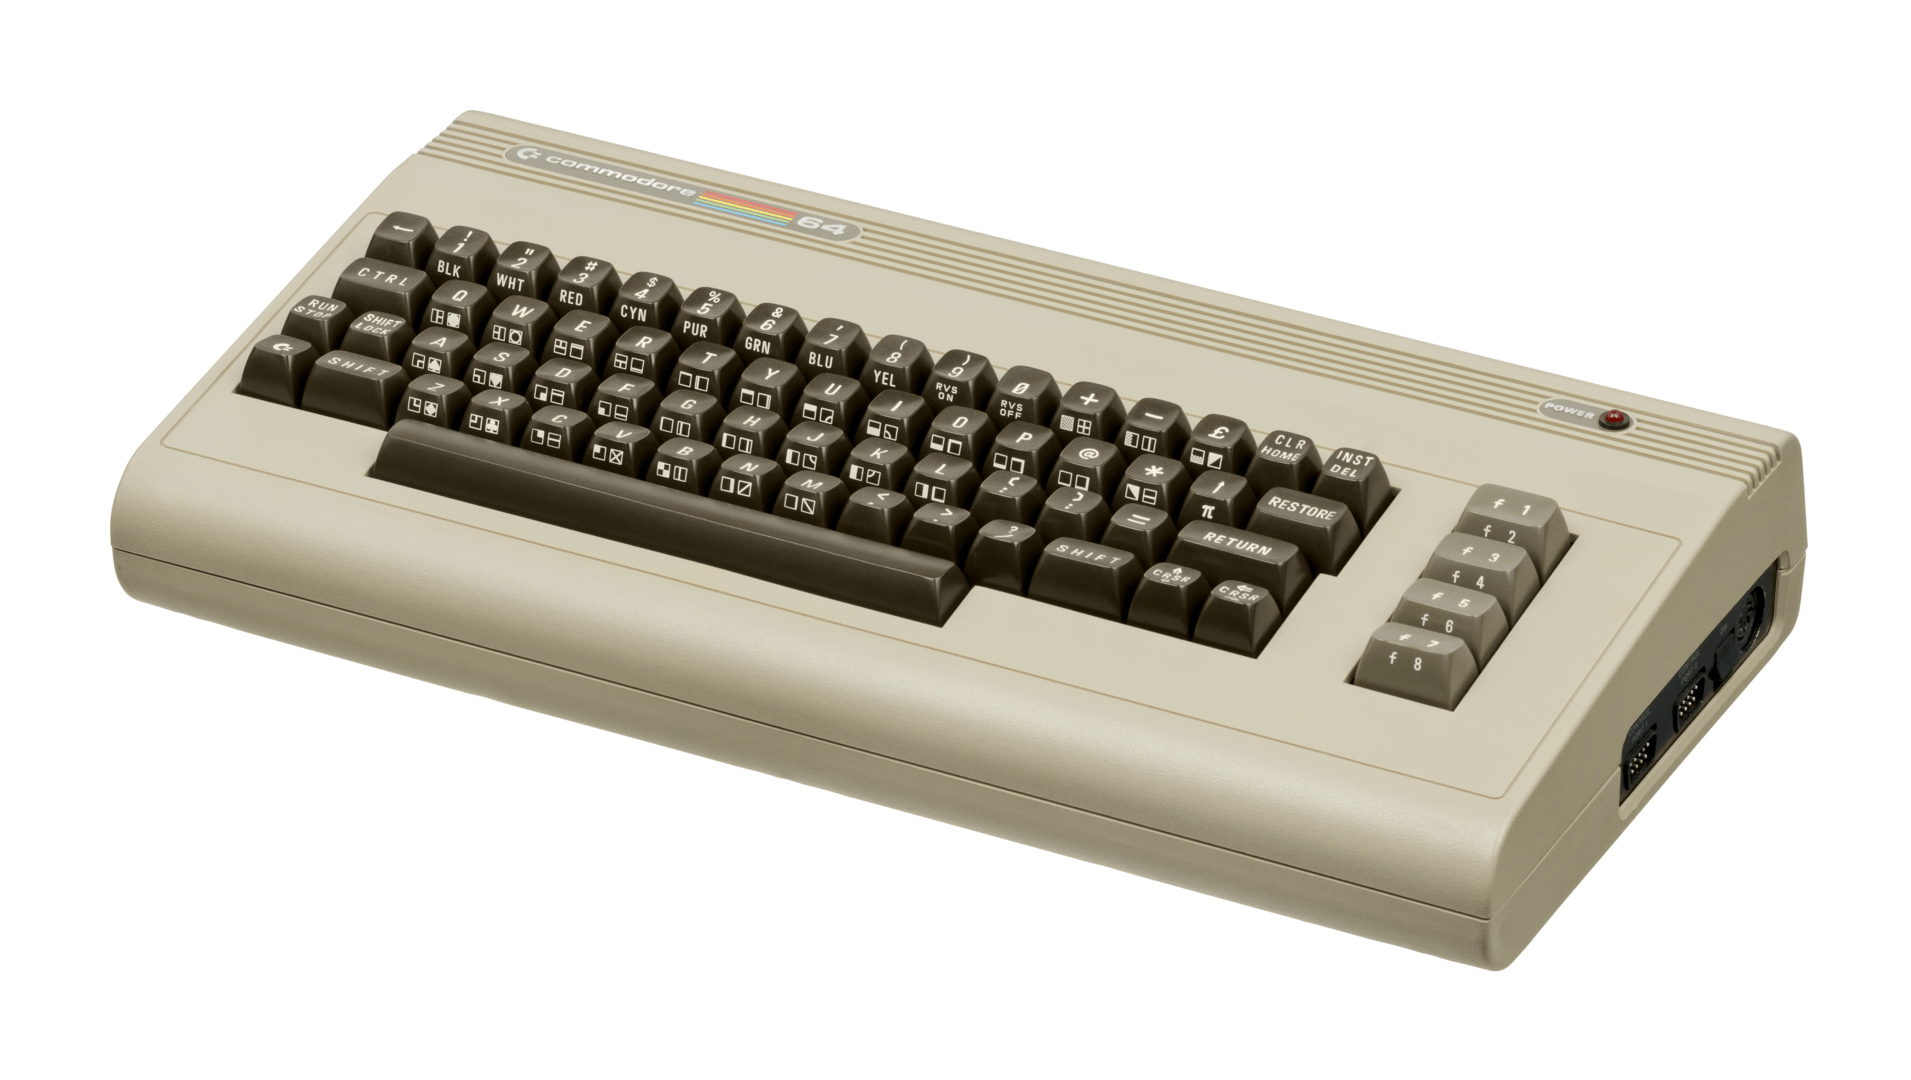 ...ging 1982 der legendäre C64 hervor